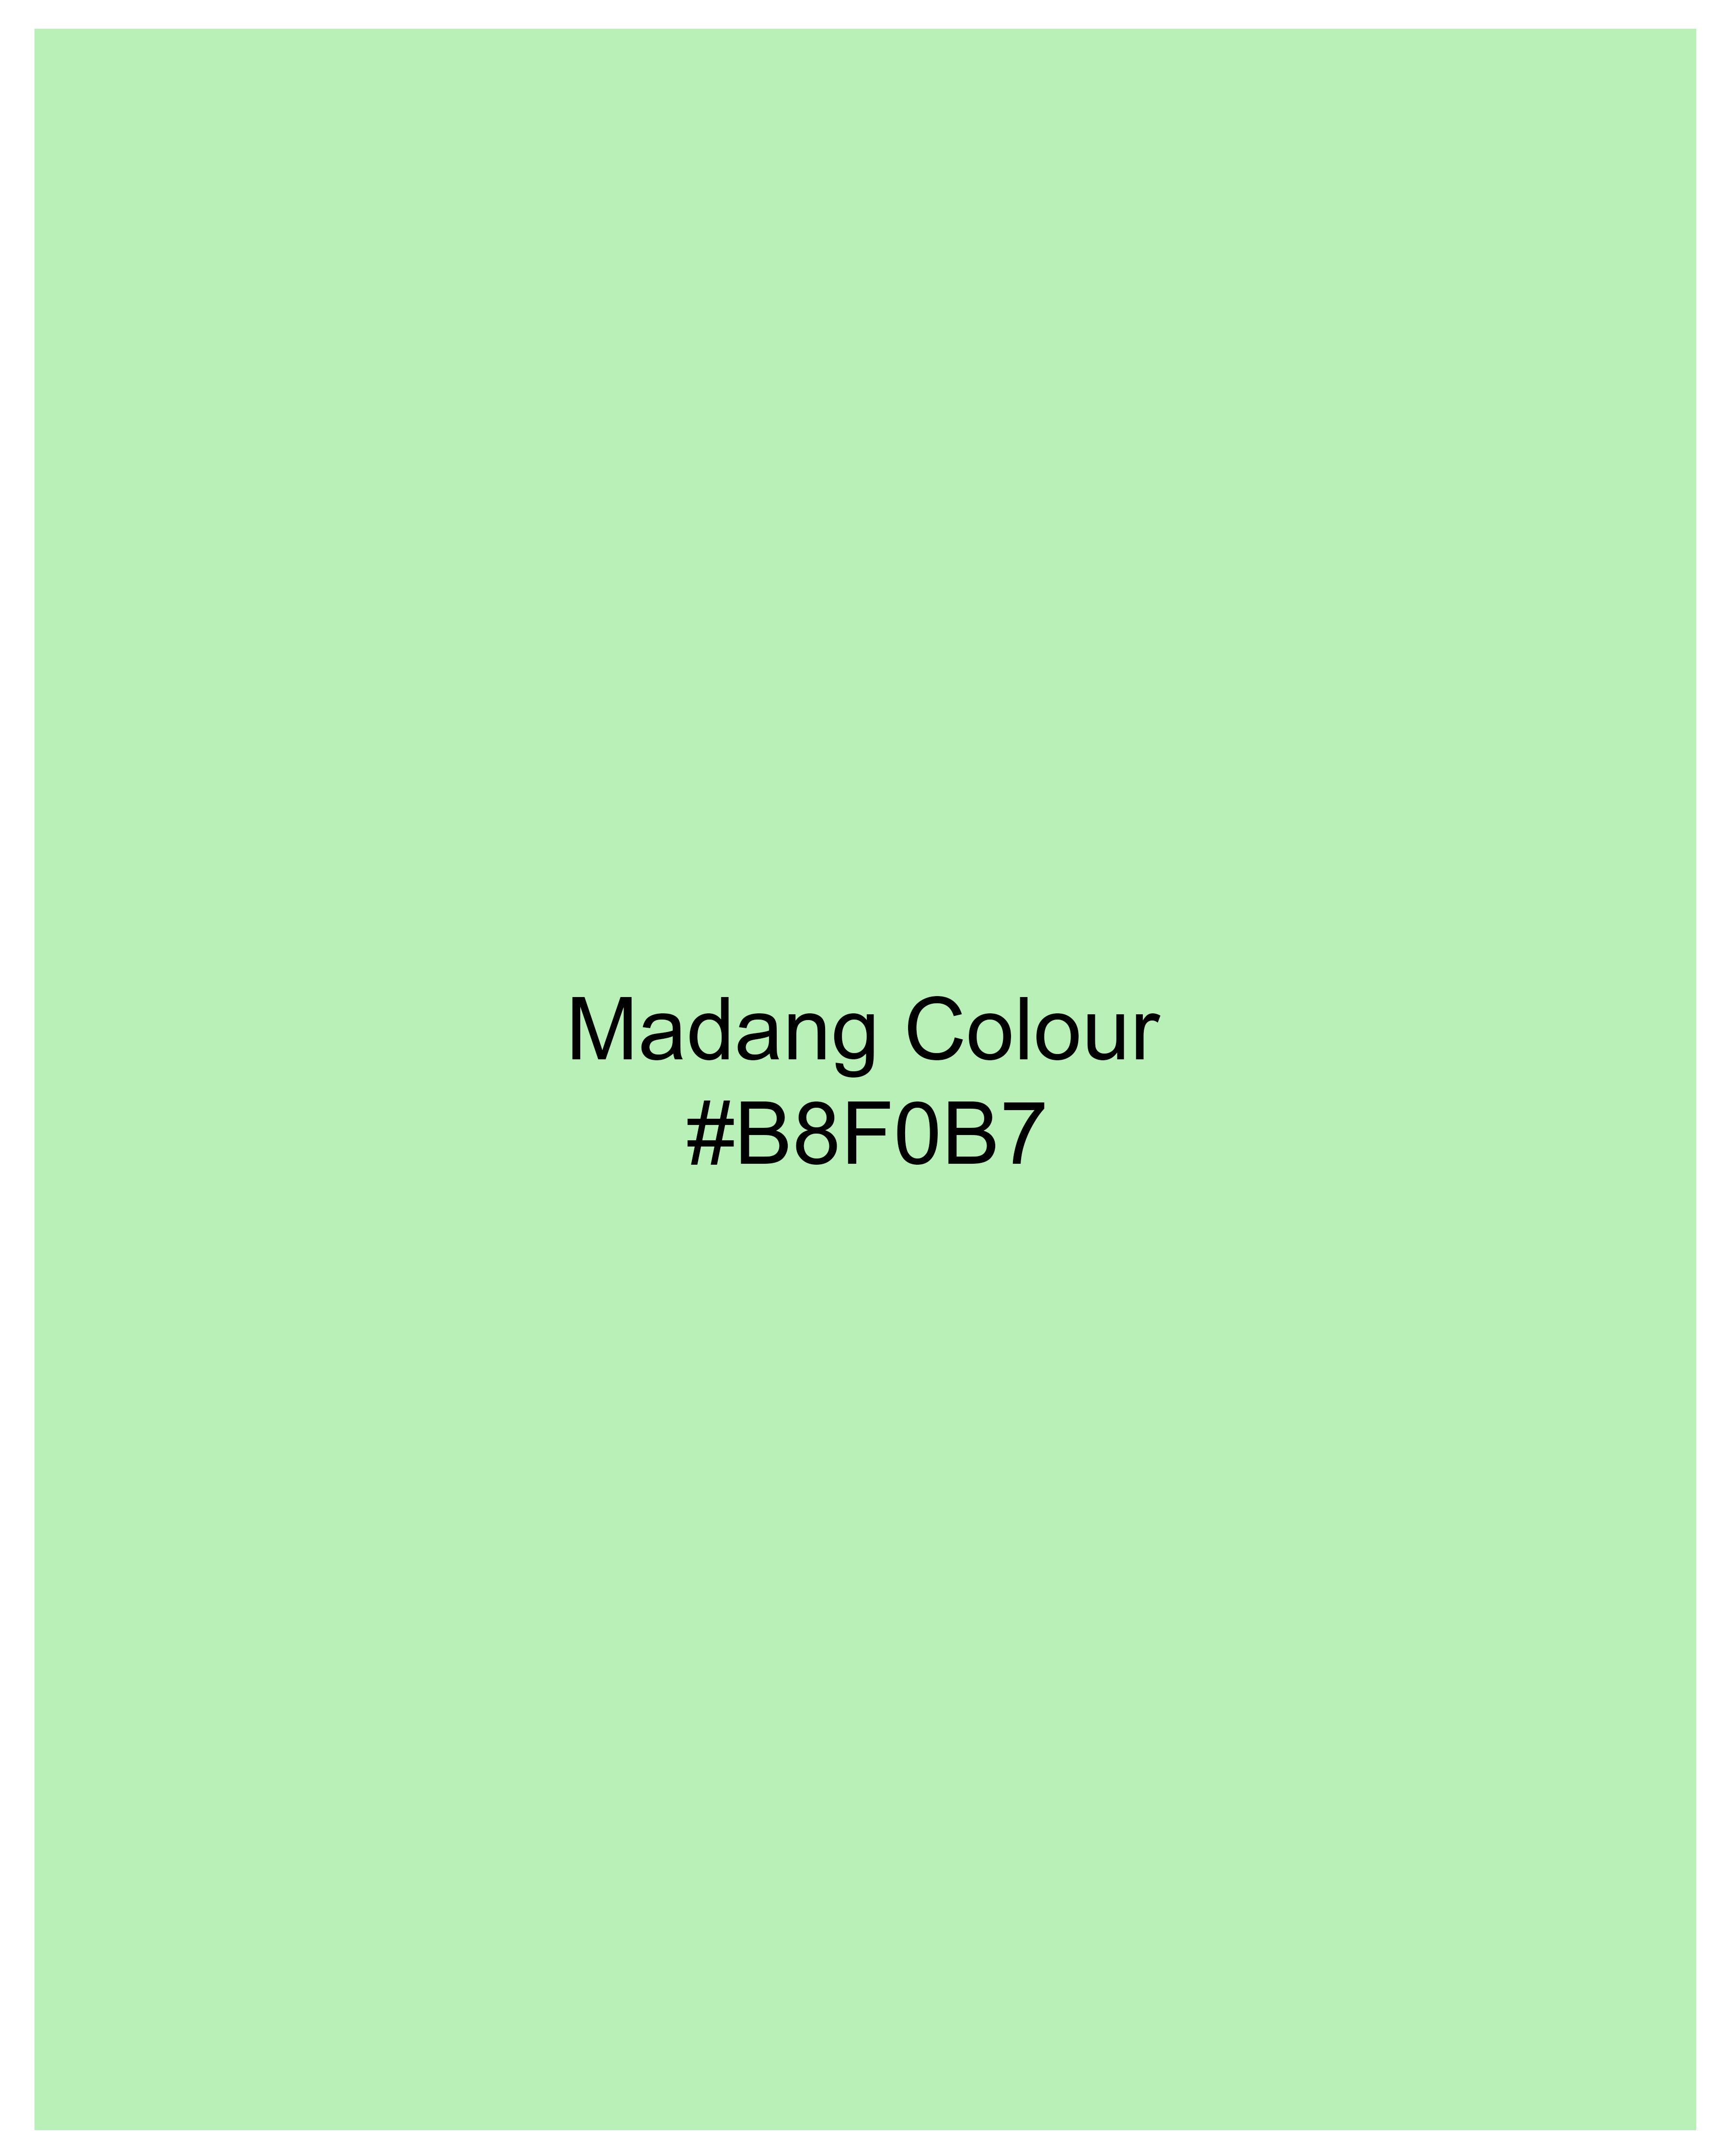 Madang Green Luxurious Linen Designer Shirt 9987-CA-BLK-P535-38, 9987-CA-BLK-P535-H-38, 9987-CA-BLK-P535-39, 9987-CA-BLK-P535-H-39, 9987-CA-BLK-P535-40, 9987-CA-BLK-P535-H-40, 9987-CA-BLK-P535-42, 9987-CA-BLK-P535-H-42, 9987-CA-BLK-P535-44, 9987-CA-BLK-P535-H-44, 9987-CA-BLK-P535-46, 9987-CA-BLK-P535-H-46, 9987-CA-BLK-P535-48, 9987-CA-BLK-P535-H-48, 9987-CA-BLK-P535-50, 9987-CA-BLK-P535-H-50, 9987-CA-BLK-P535-52, 9987-CA-BLK-P535-H-52